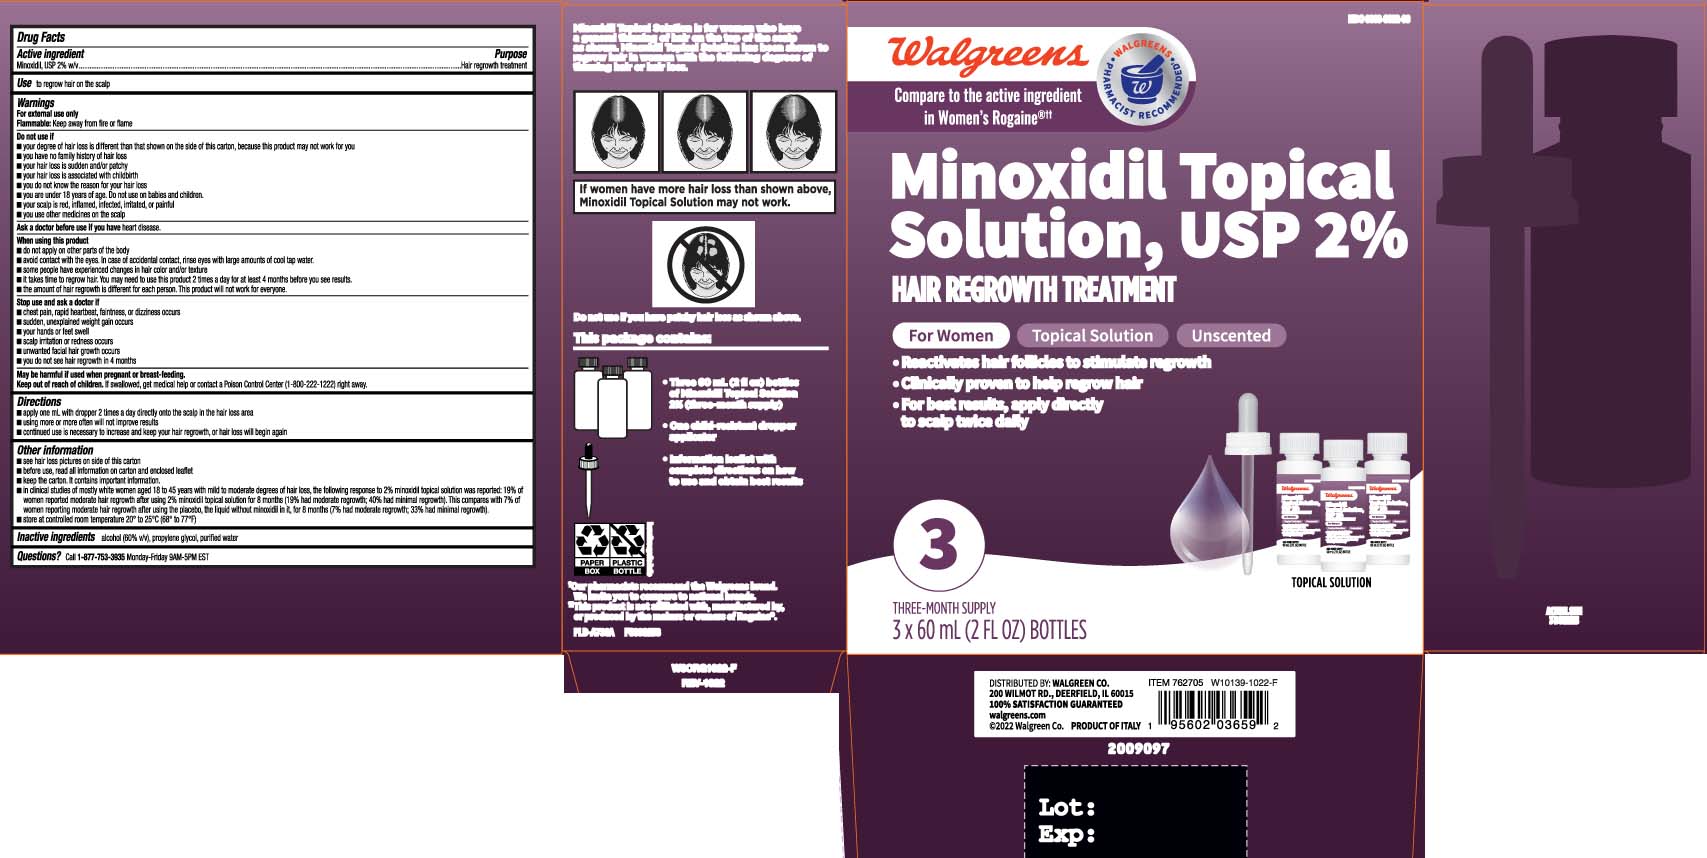 Minoxidil, USP 2% w/v